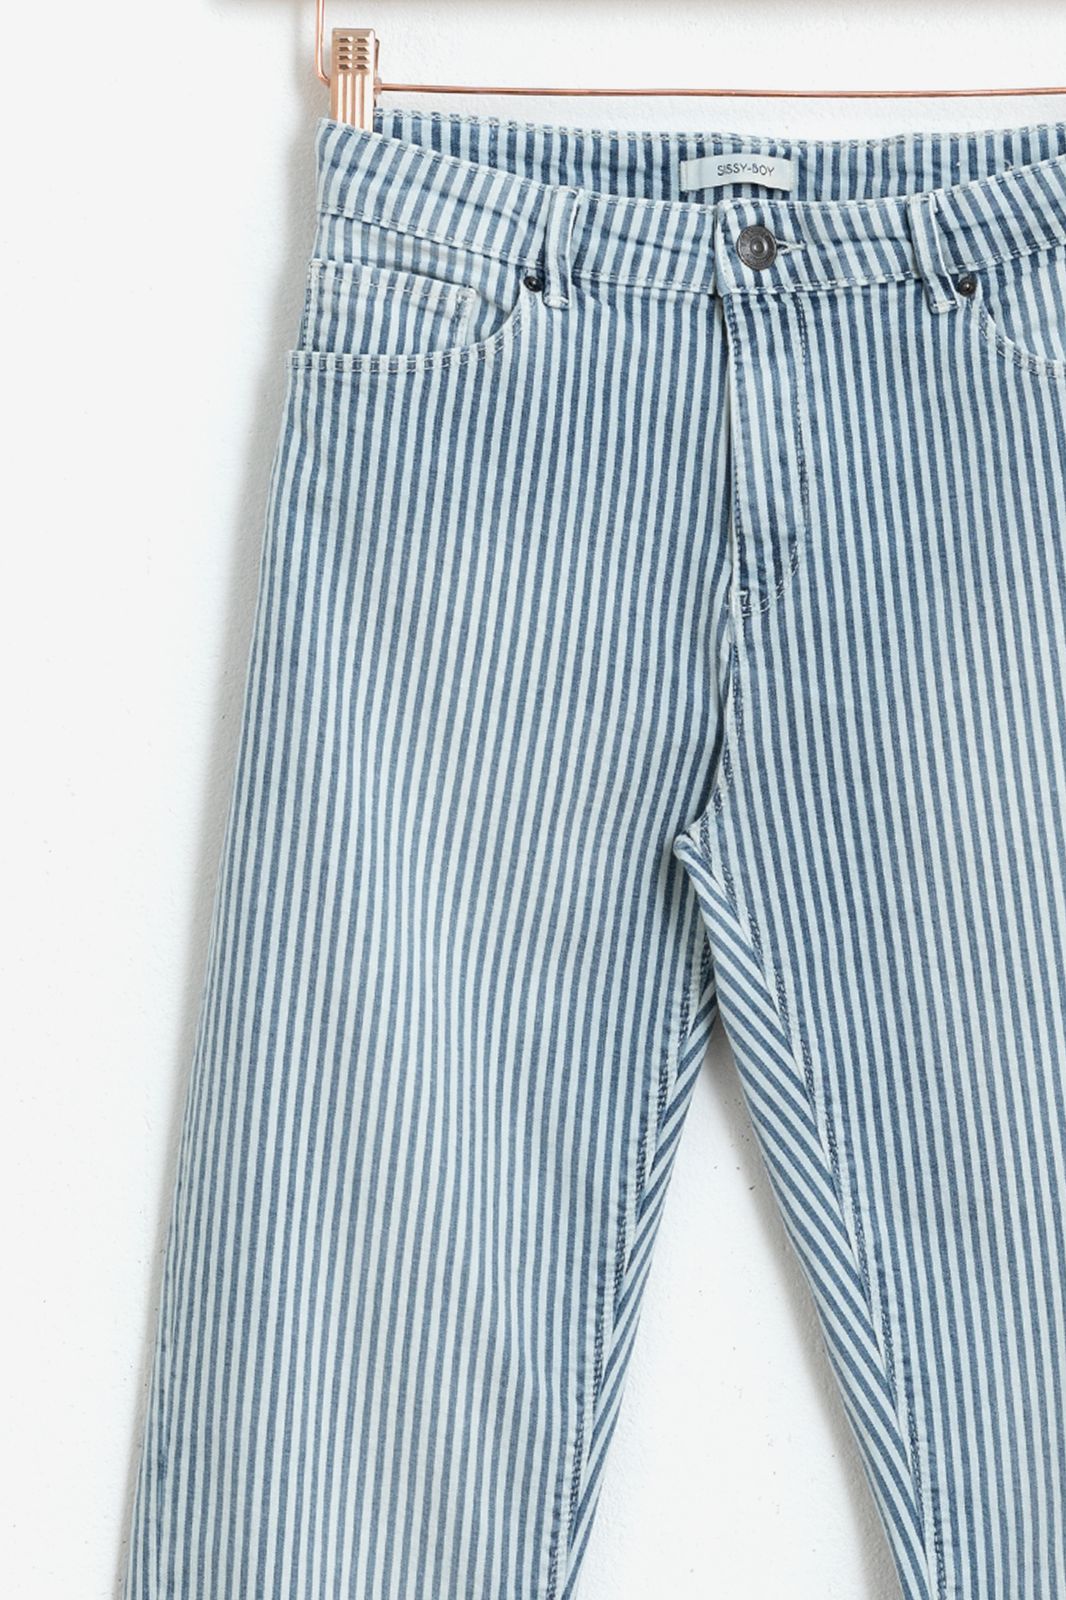 Nathaniel Ward Sinis Tijdens ~ Bari striped mid waist tapered jeans